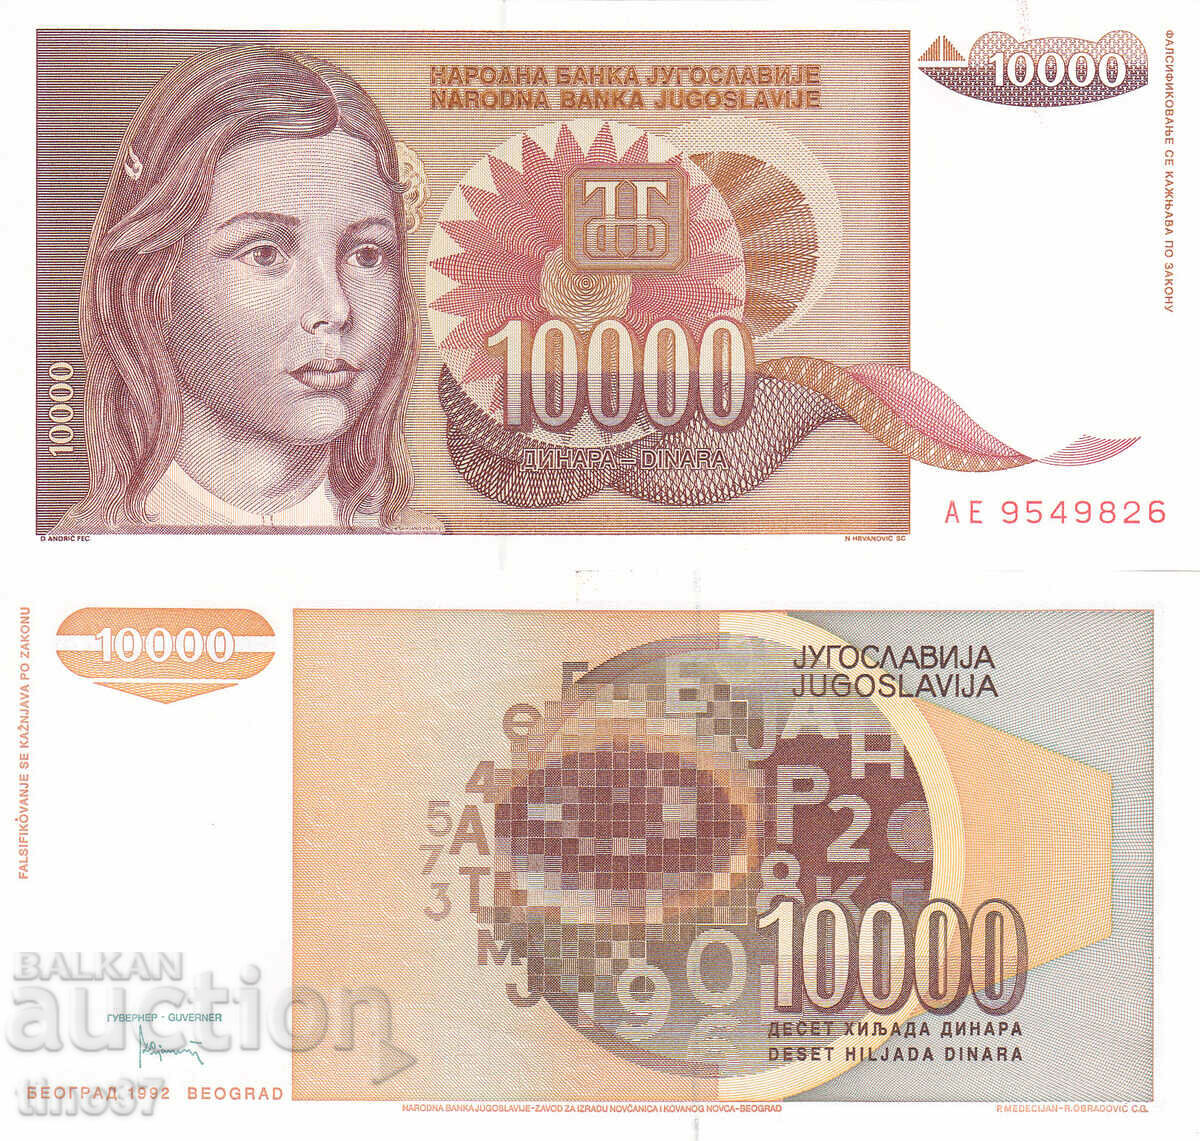 tino37- YUGOSLAVIA - 10000 DINARS - 1992 - UNC